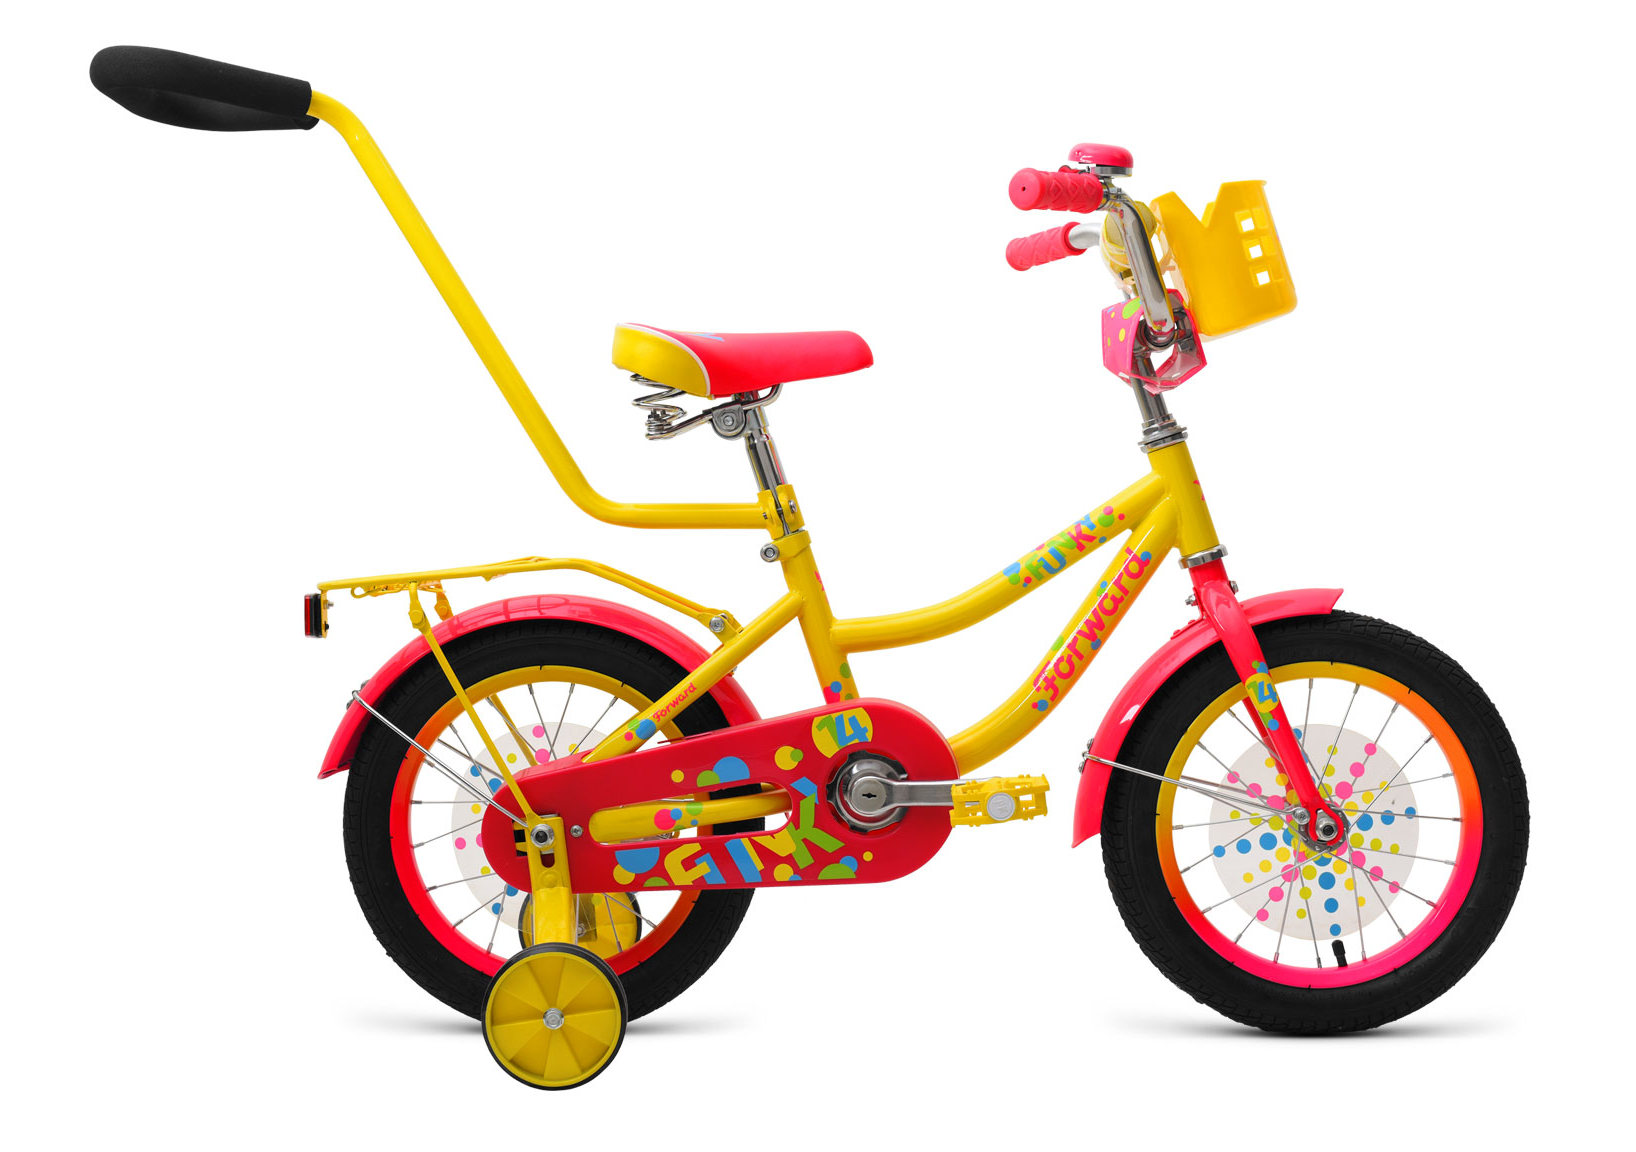 Купить велосипед для мальчика в москве